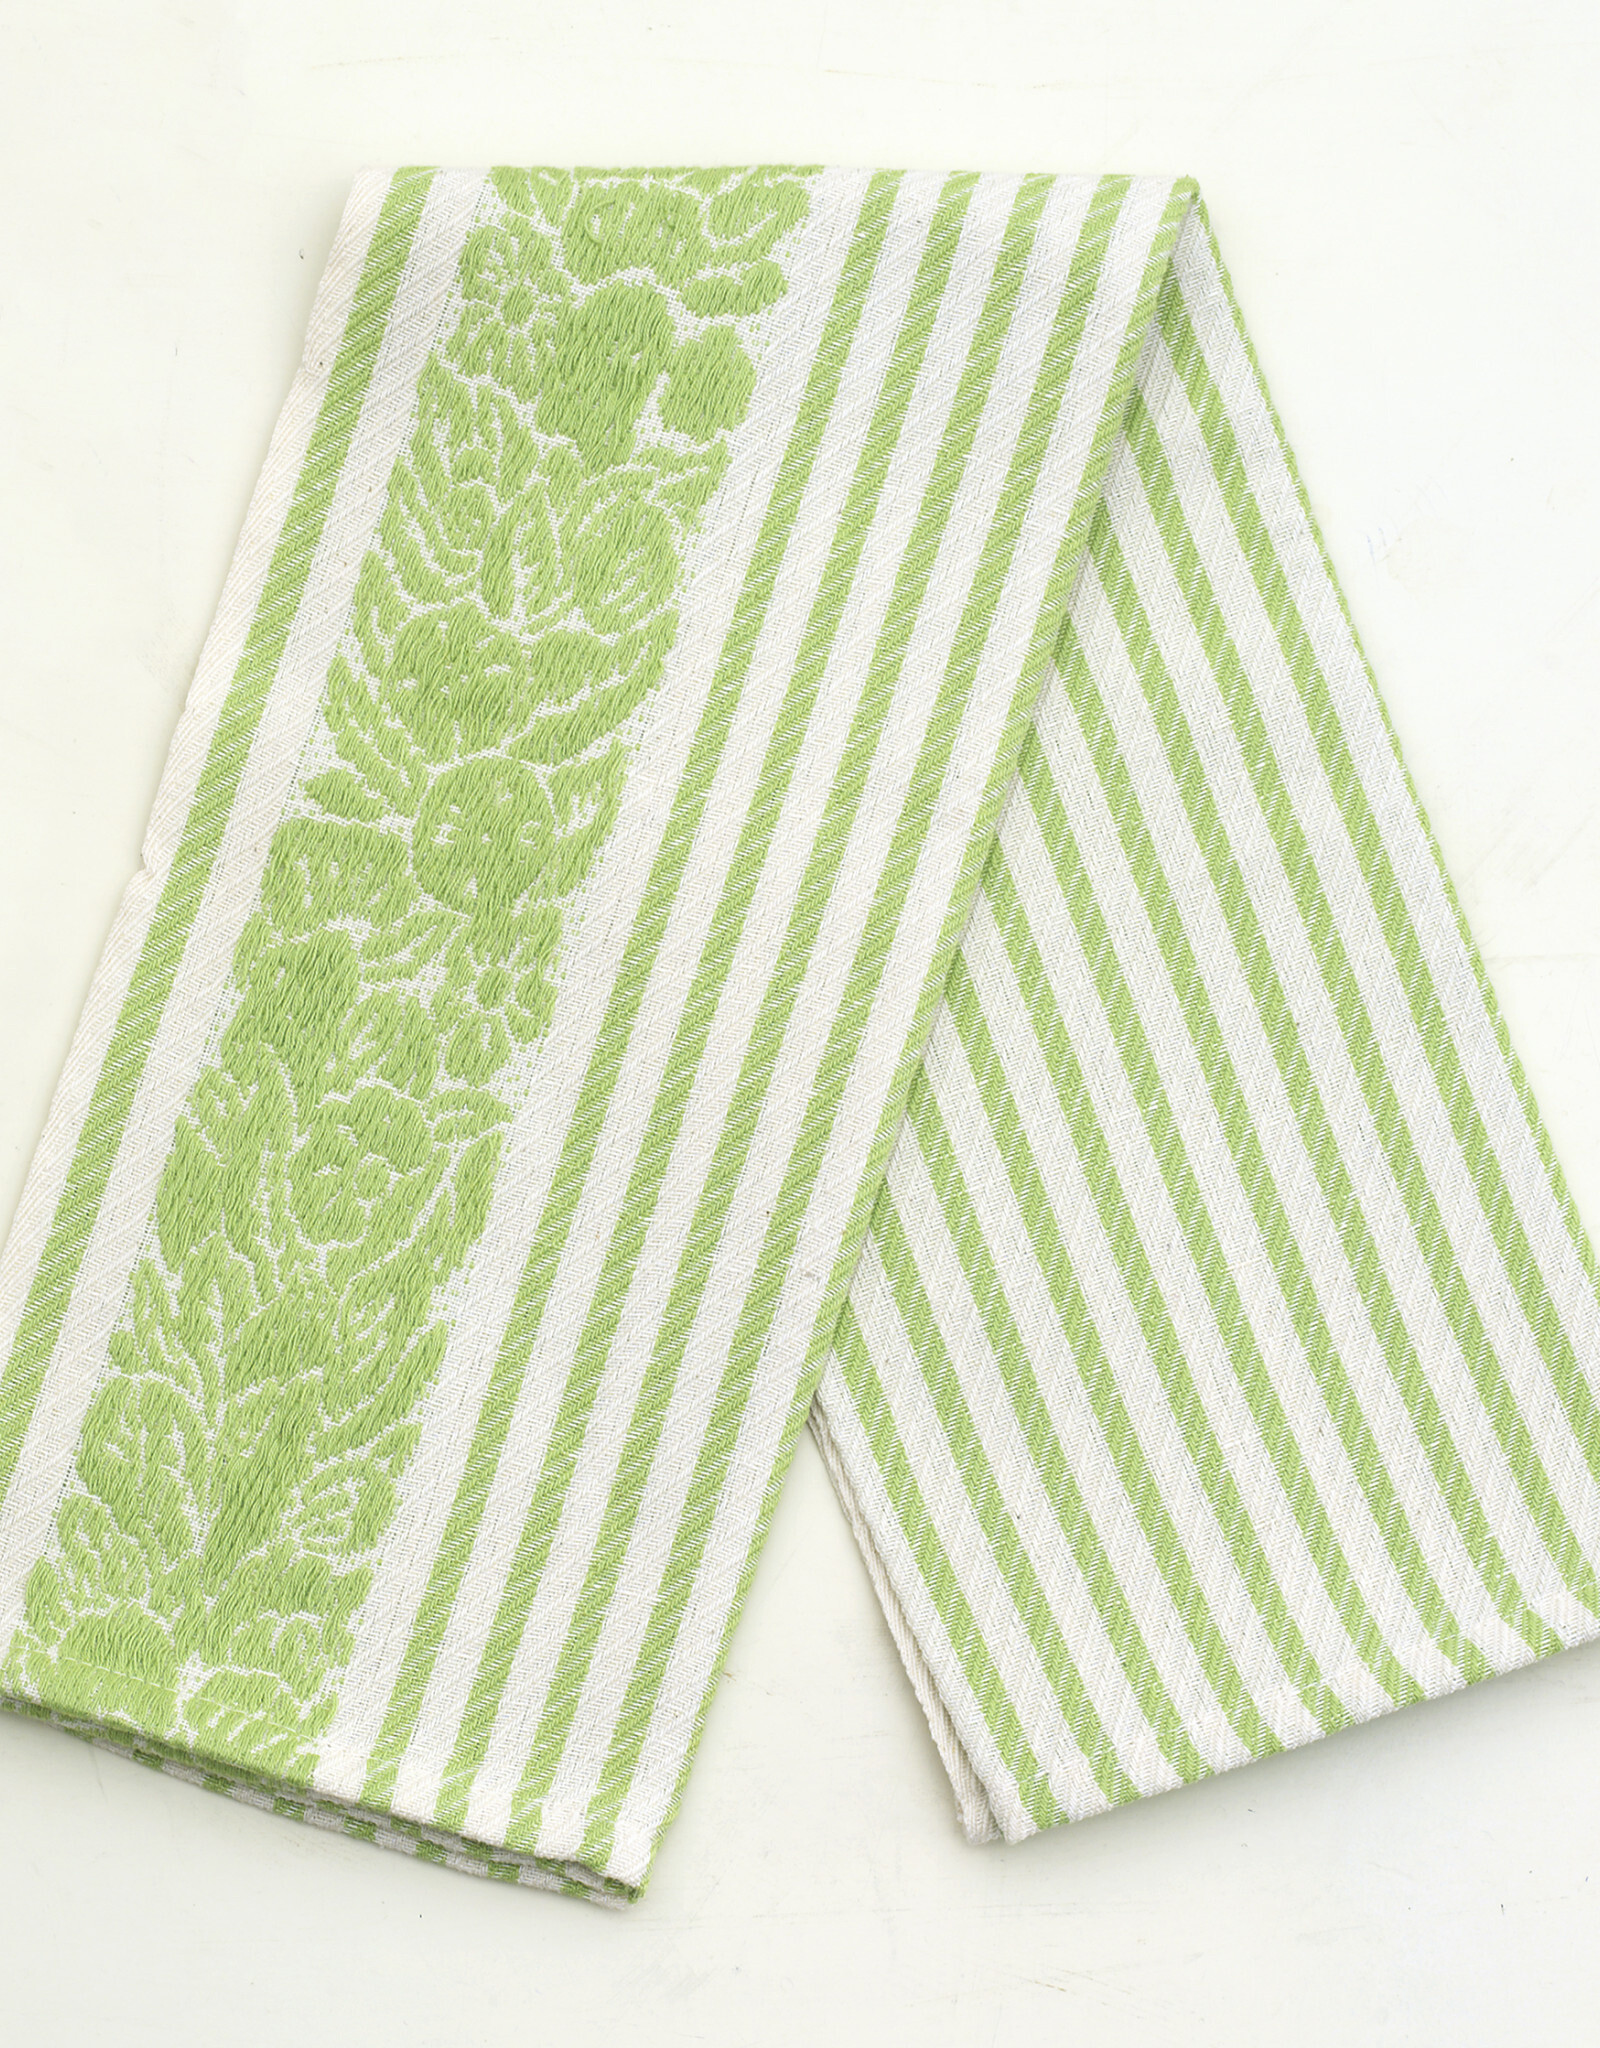 Busatti Italy Busatti Mirto - Kitchen towel Green - 60% Linen 40% Cotton  25" x 28"